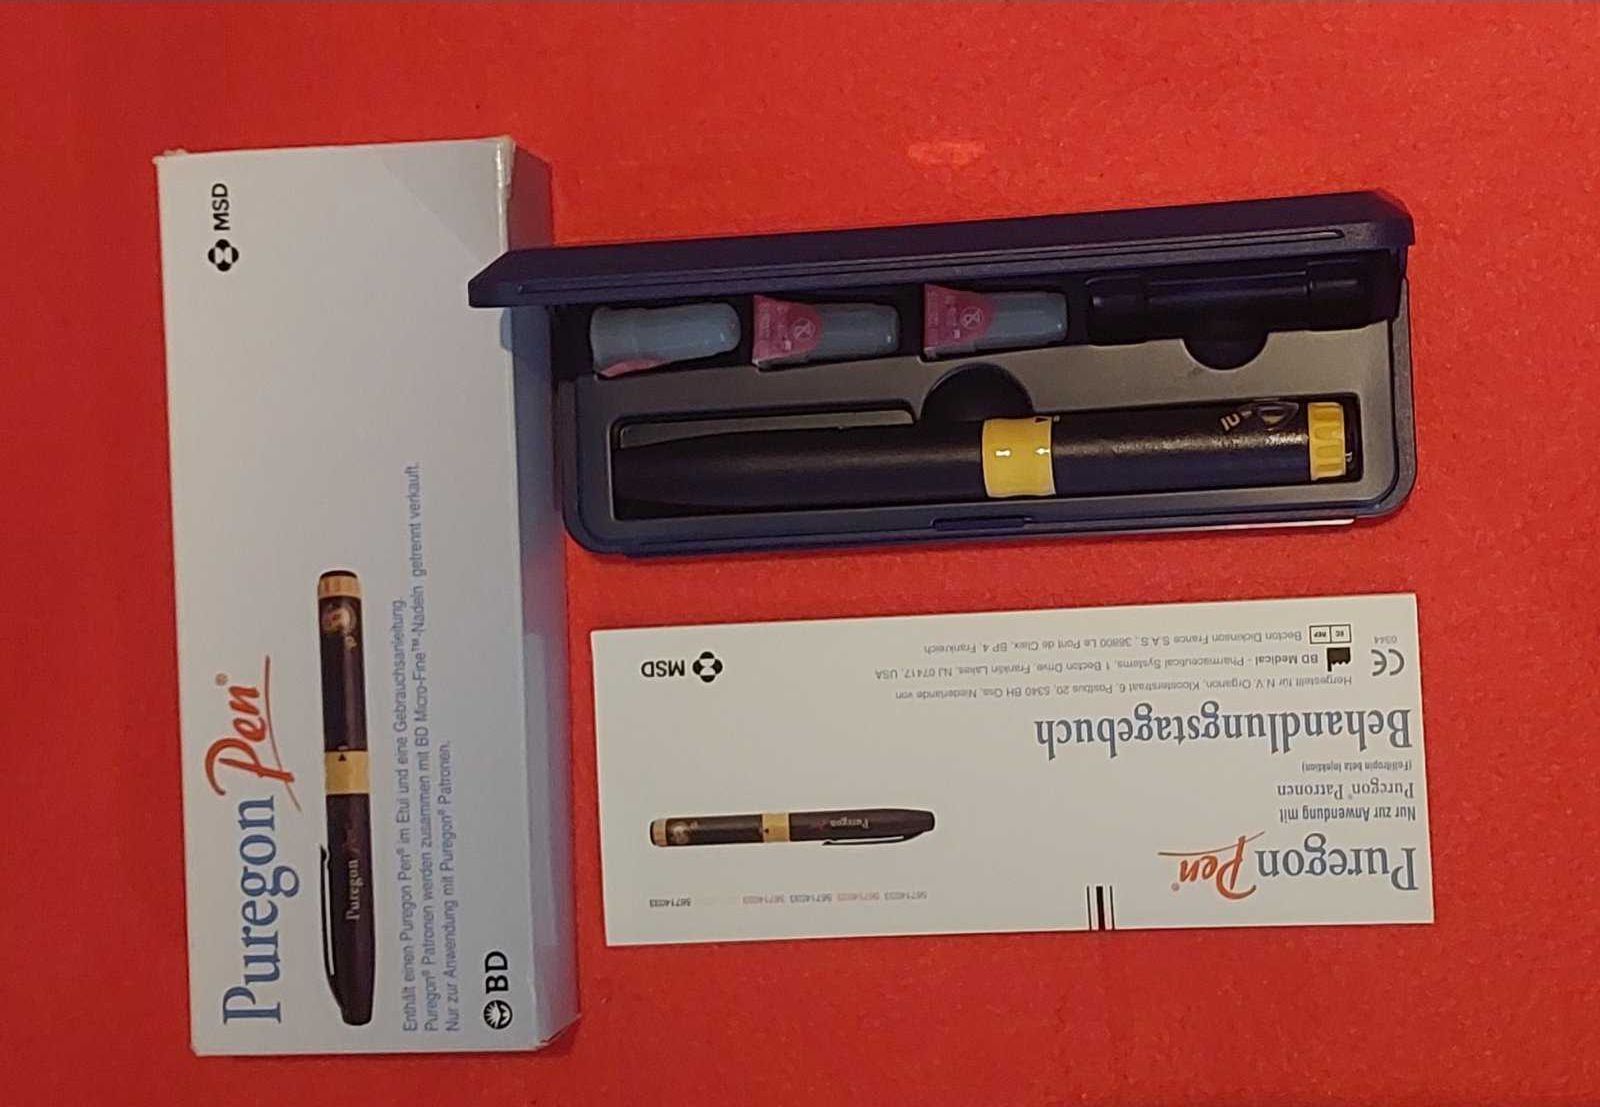 Puregon Пурегон-пен MSD ручка-інжектор для введення лікарських засобів